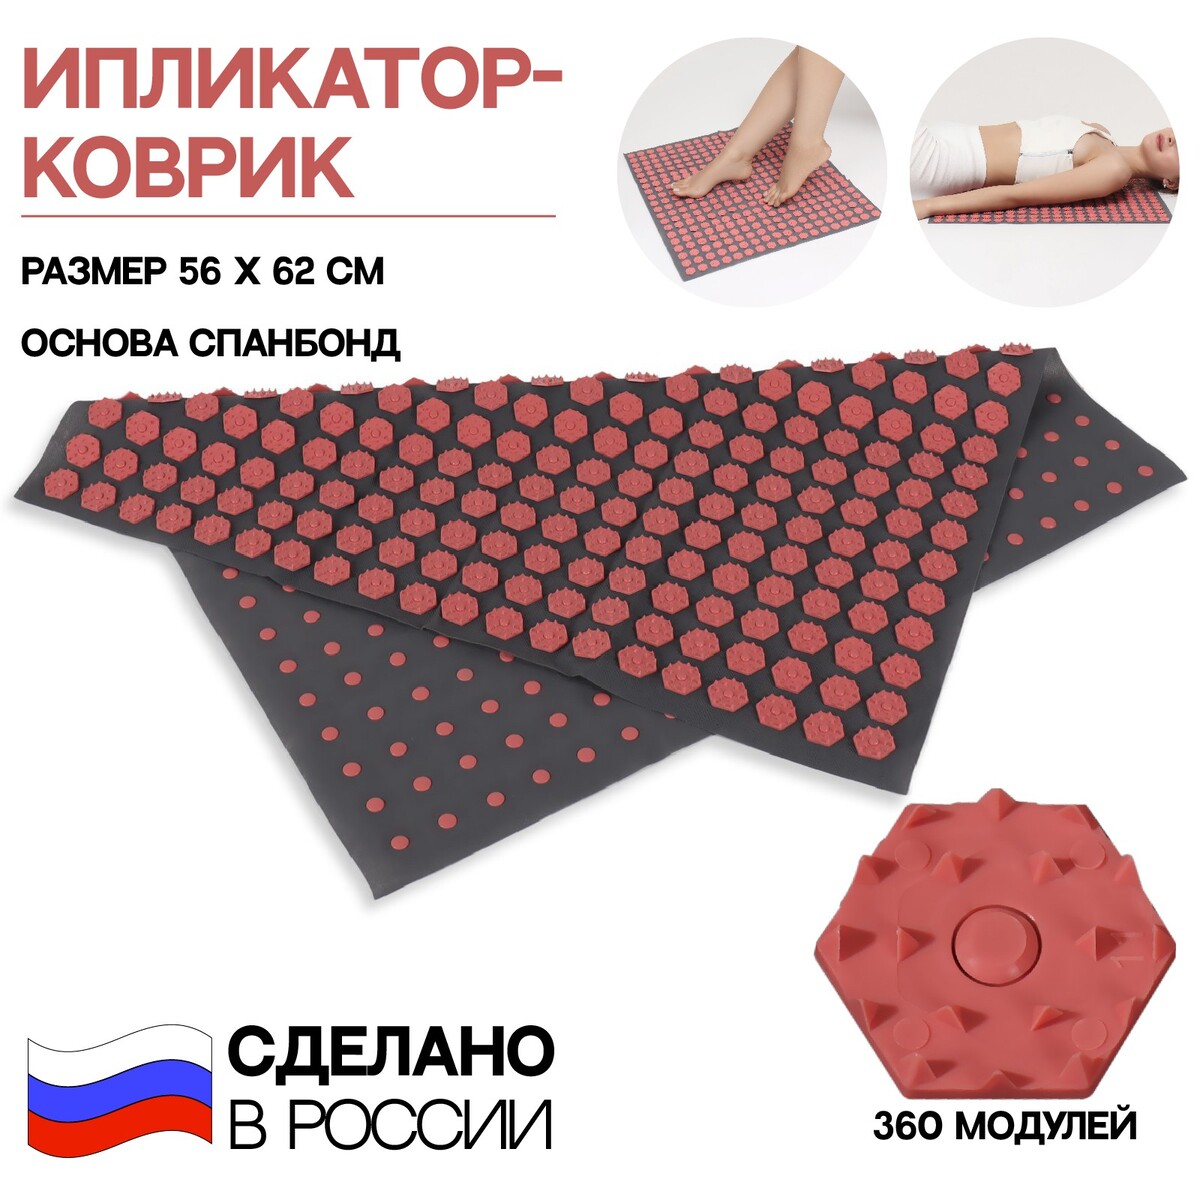 Ипликатор-коврик, основа спанбонд, 360 модулей, 56 × 62 см, цвет темно-серый/красный